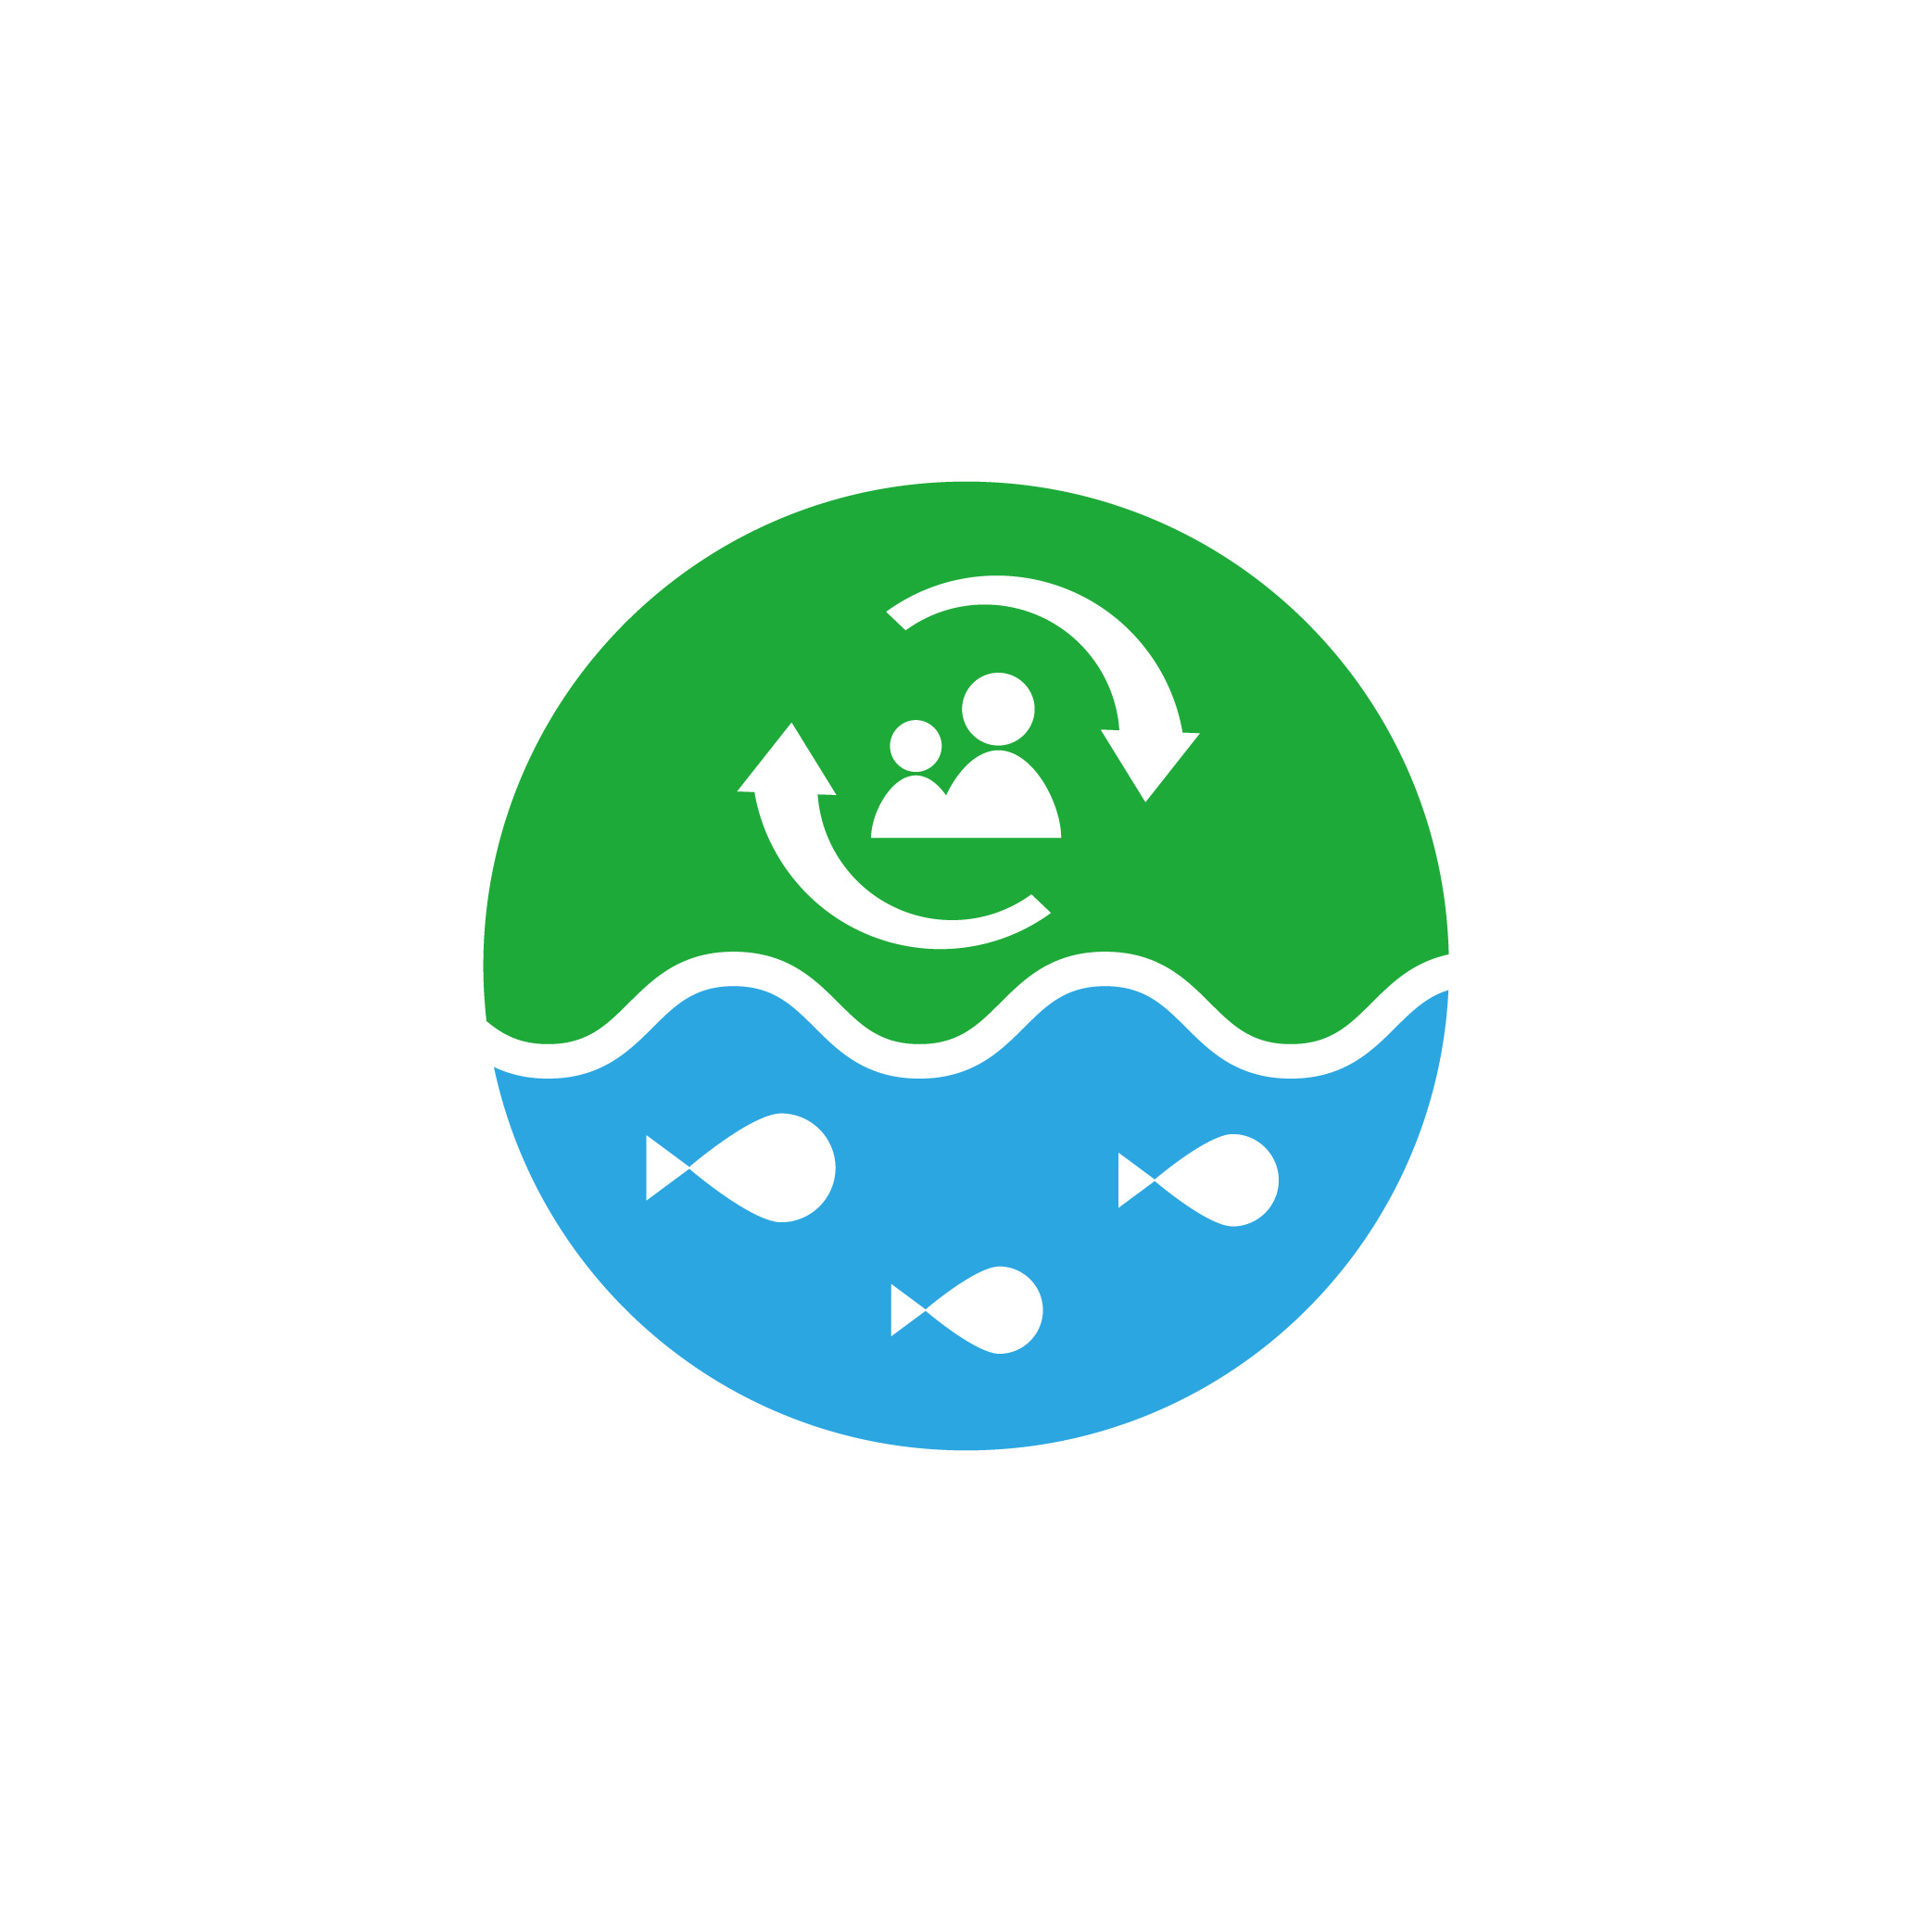 瀬戸内海の海洋ごみ問題解決に向けての「自分事化」プロジェクト